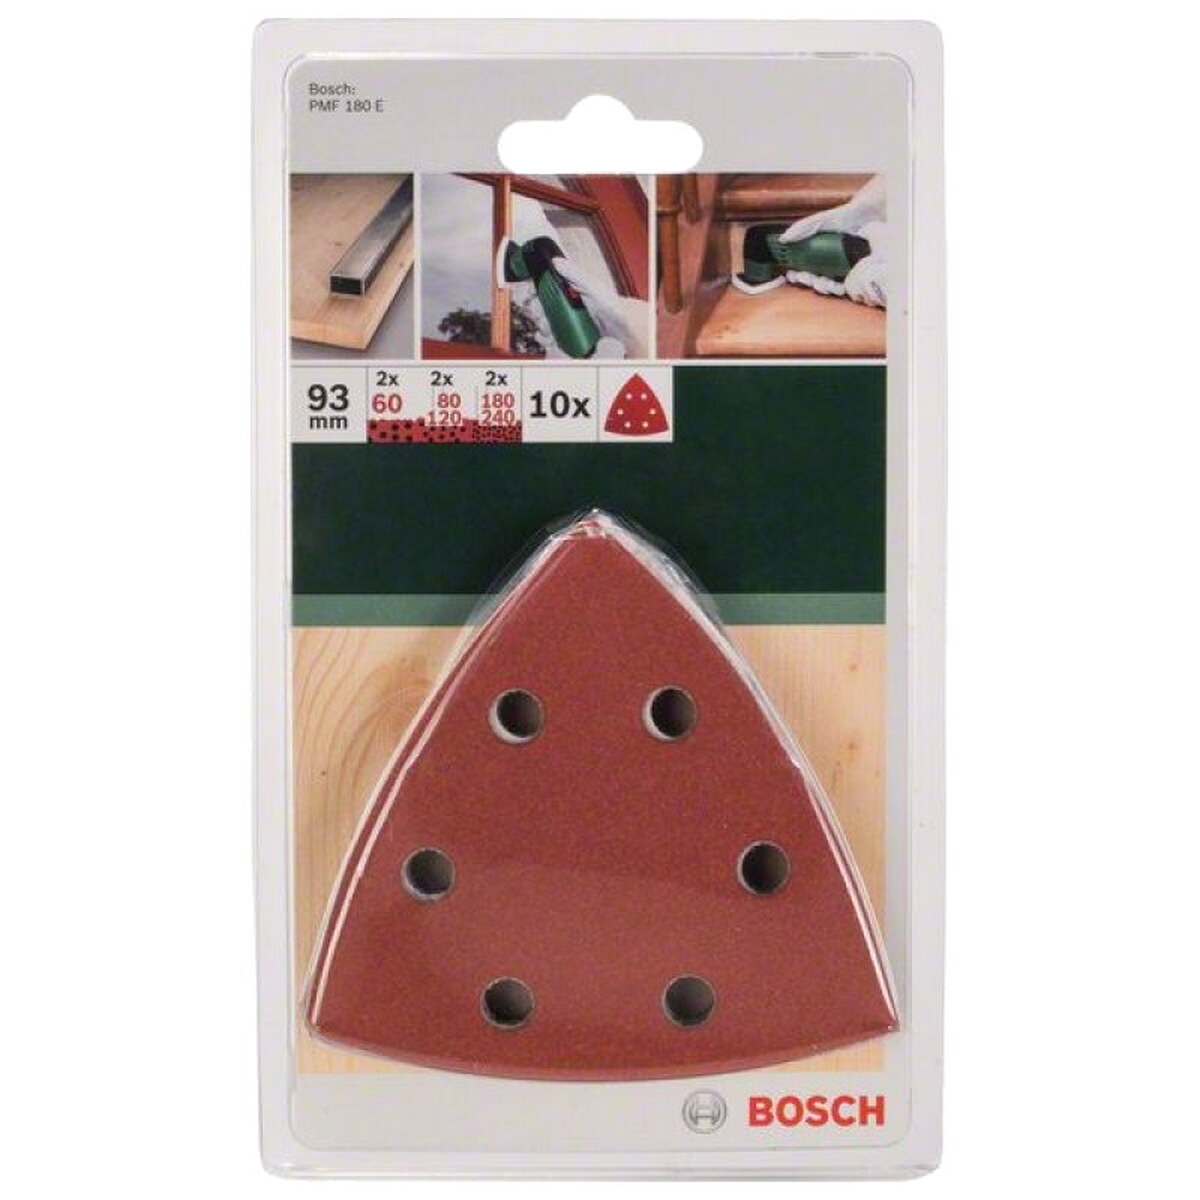 Лист шлифовальный для МФИ Bosch PMF 180E 93мм 10шт (957) — Фото 1